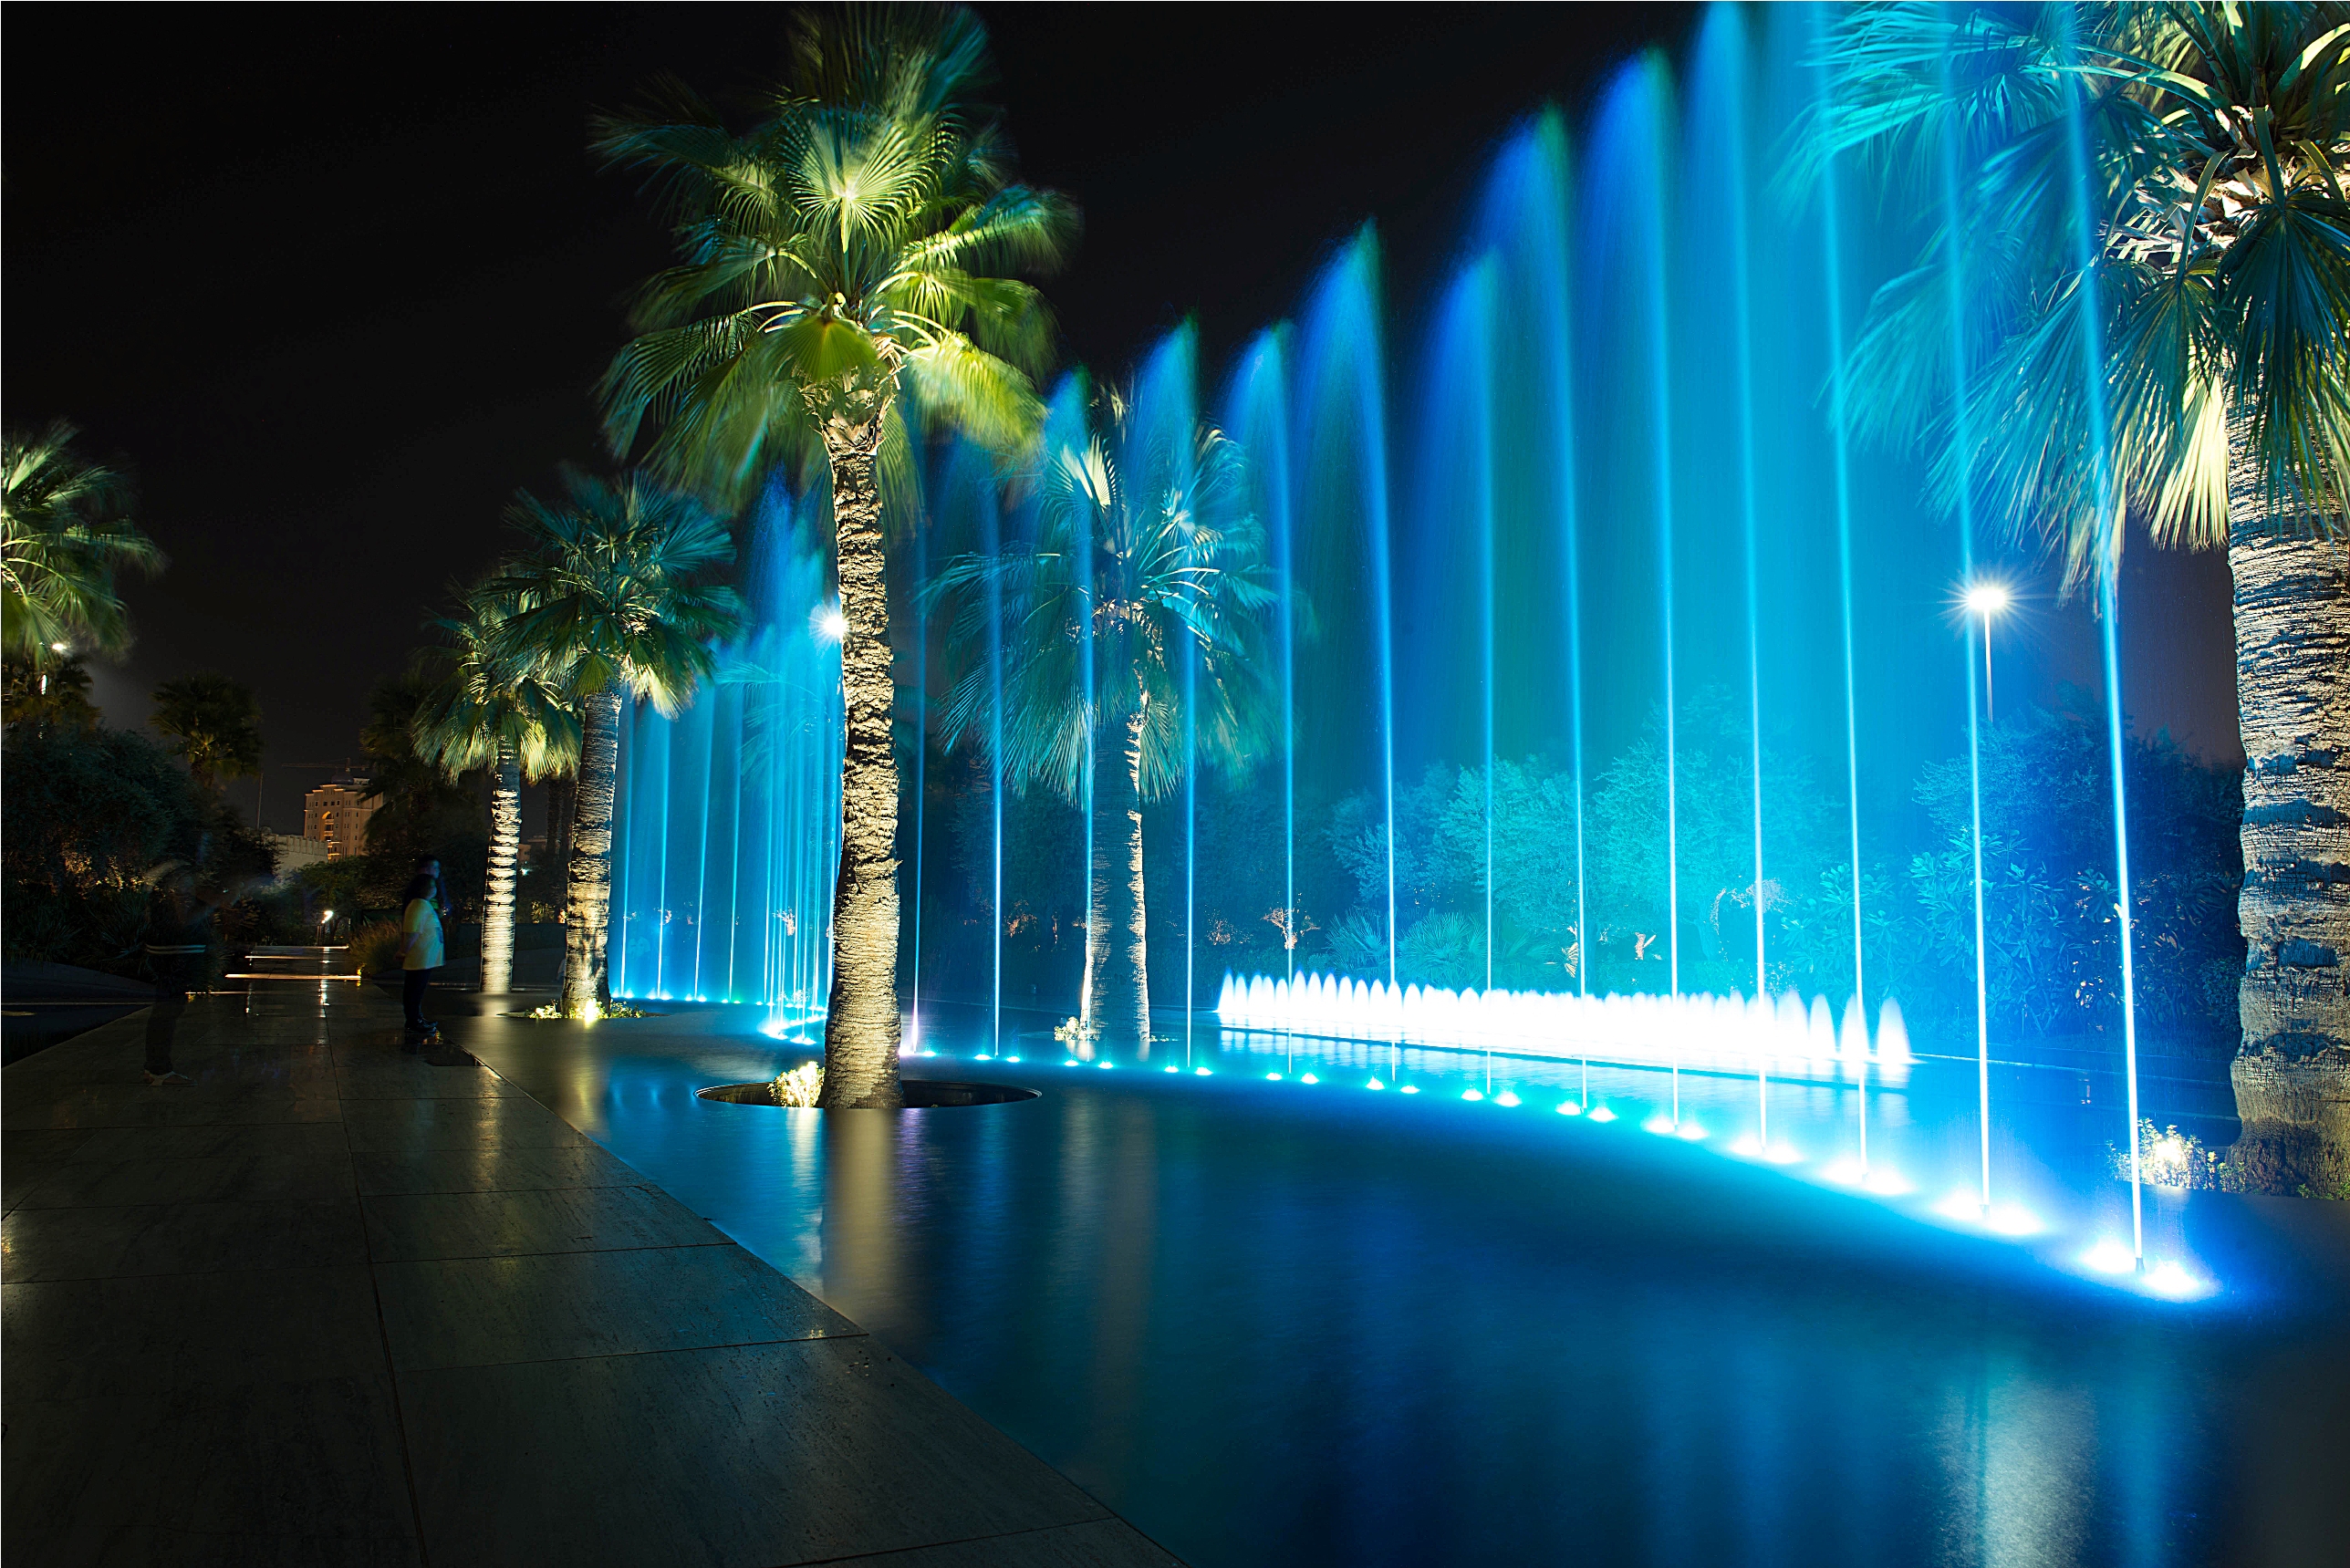 Al-Shaheed Park at night